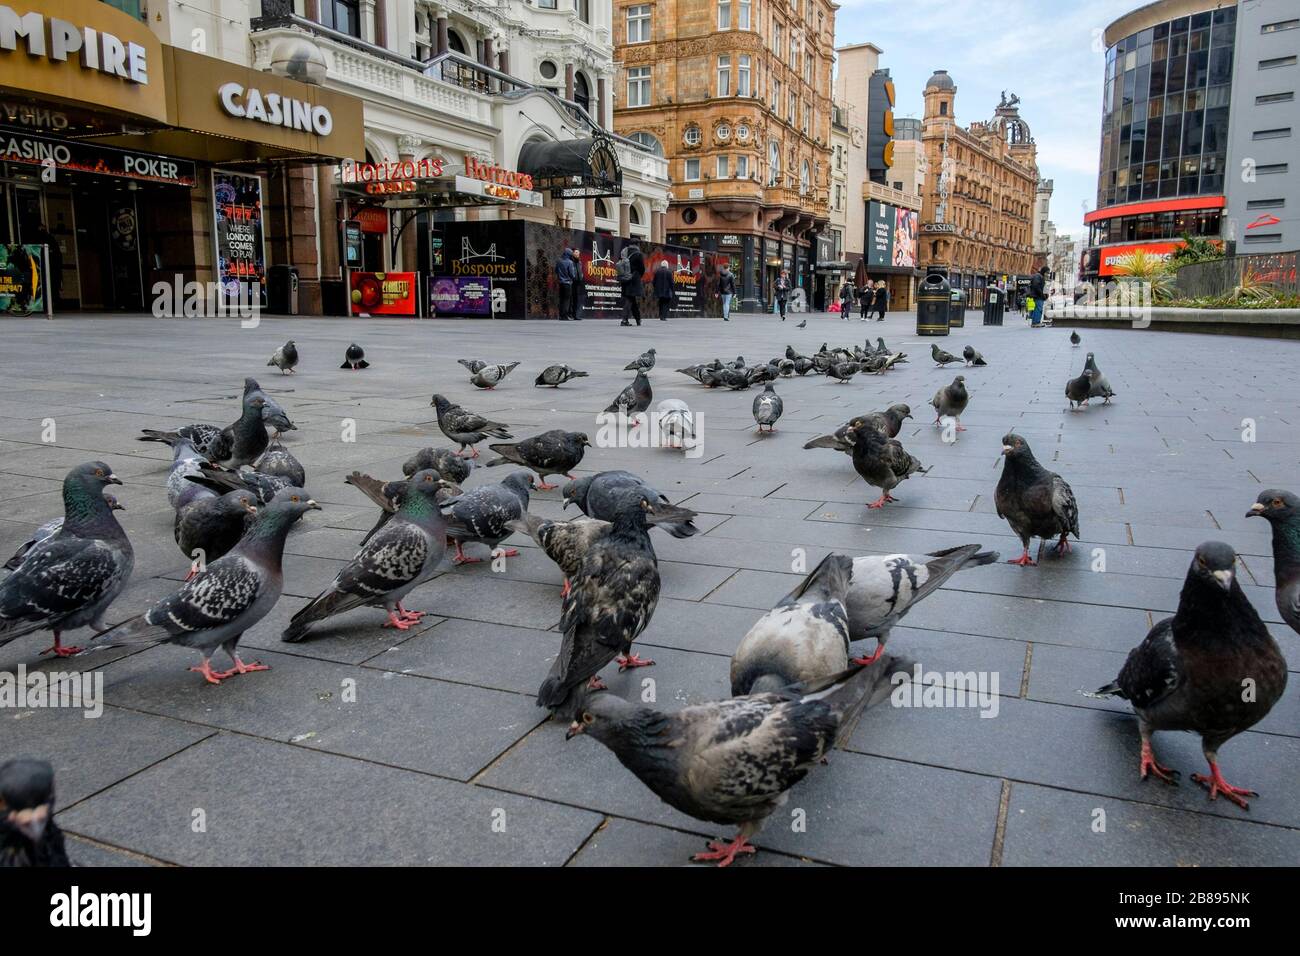 Londra, Regno Unito. 20 marzo 2020. I piccioni superano le persone in una piazza di Leicester quasi deserta, un'area normalmente piena di attività. Foto Stock